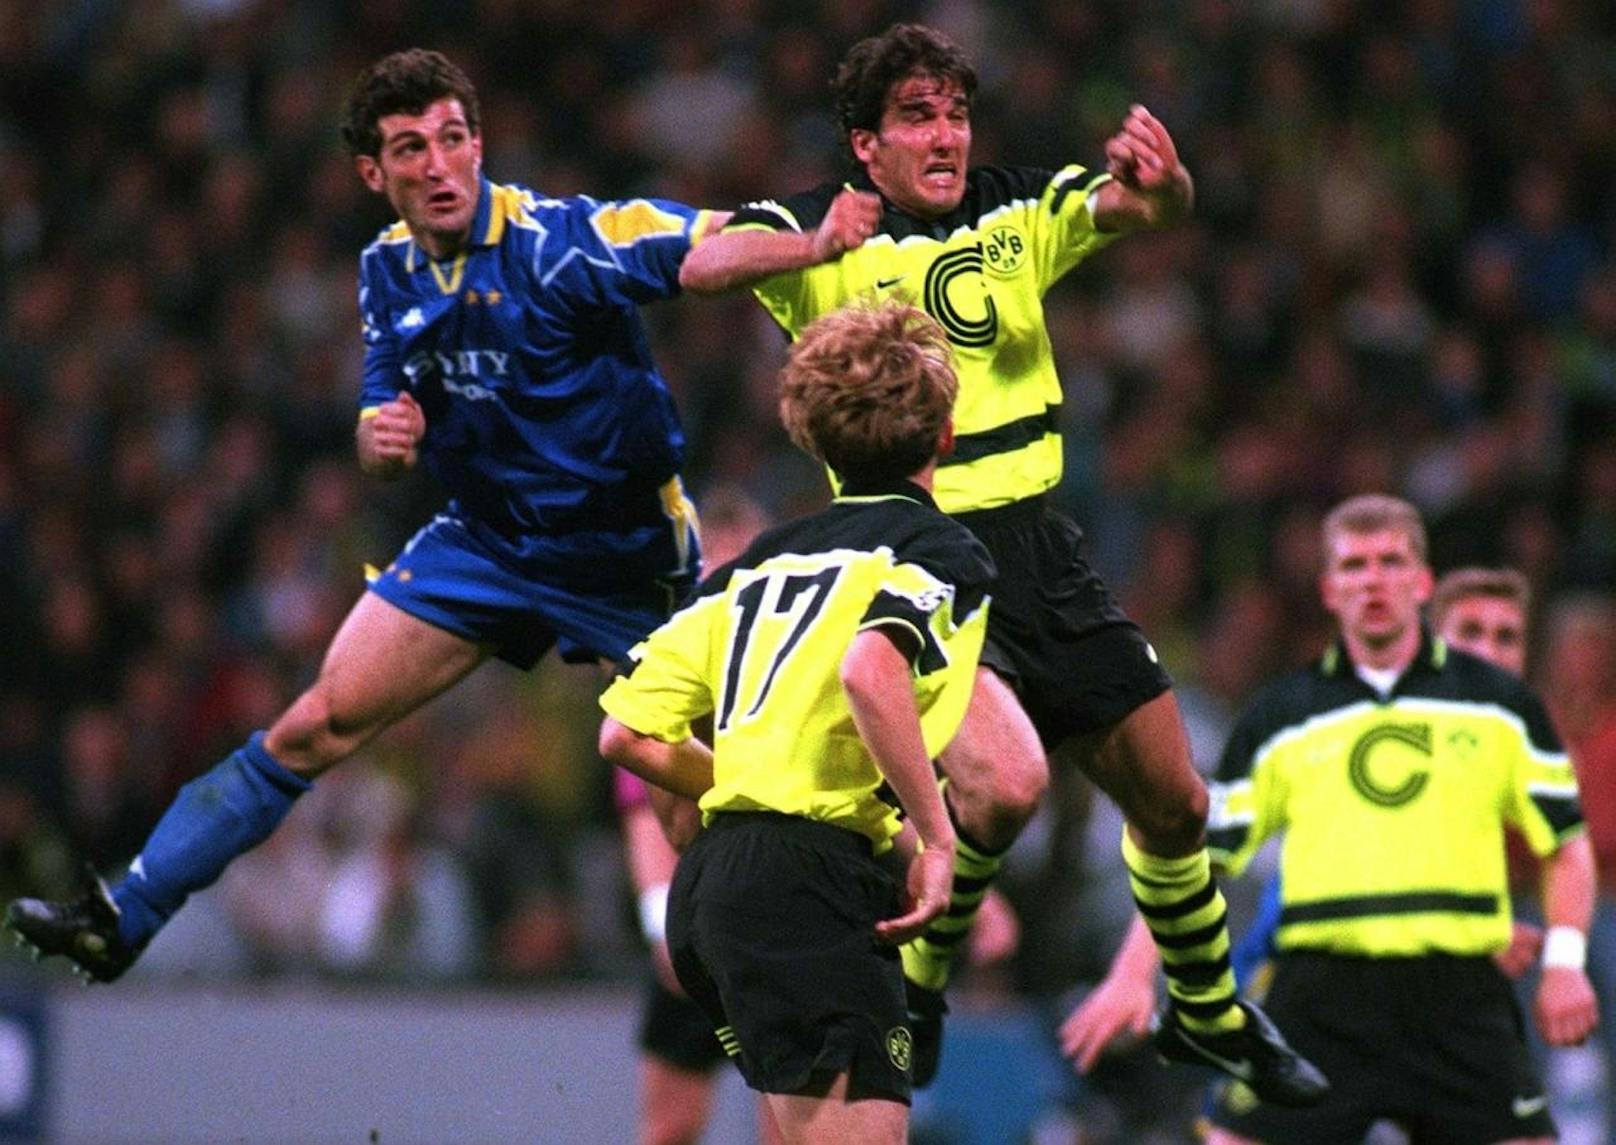 1997 stieg das Endspiel erneut in München. Dortmund nahm es mit Juventus Turin auf.